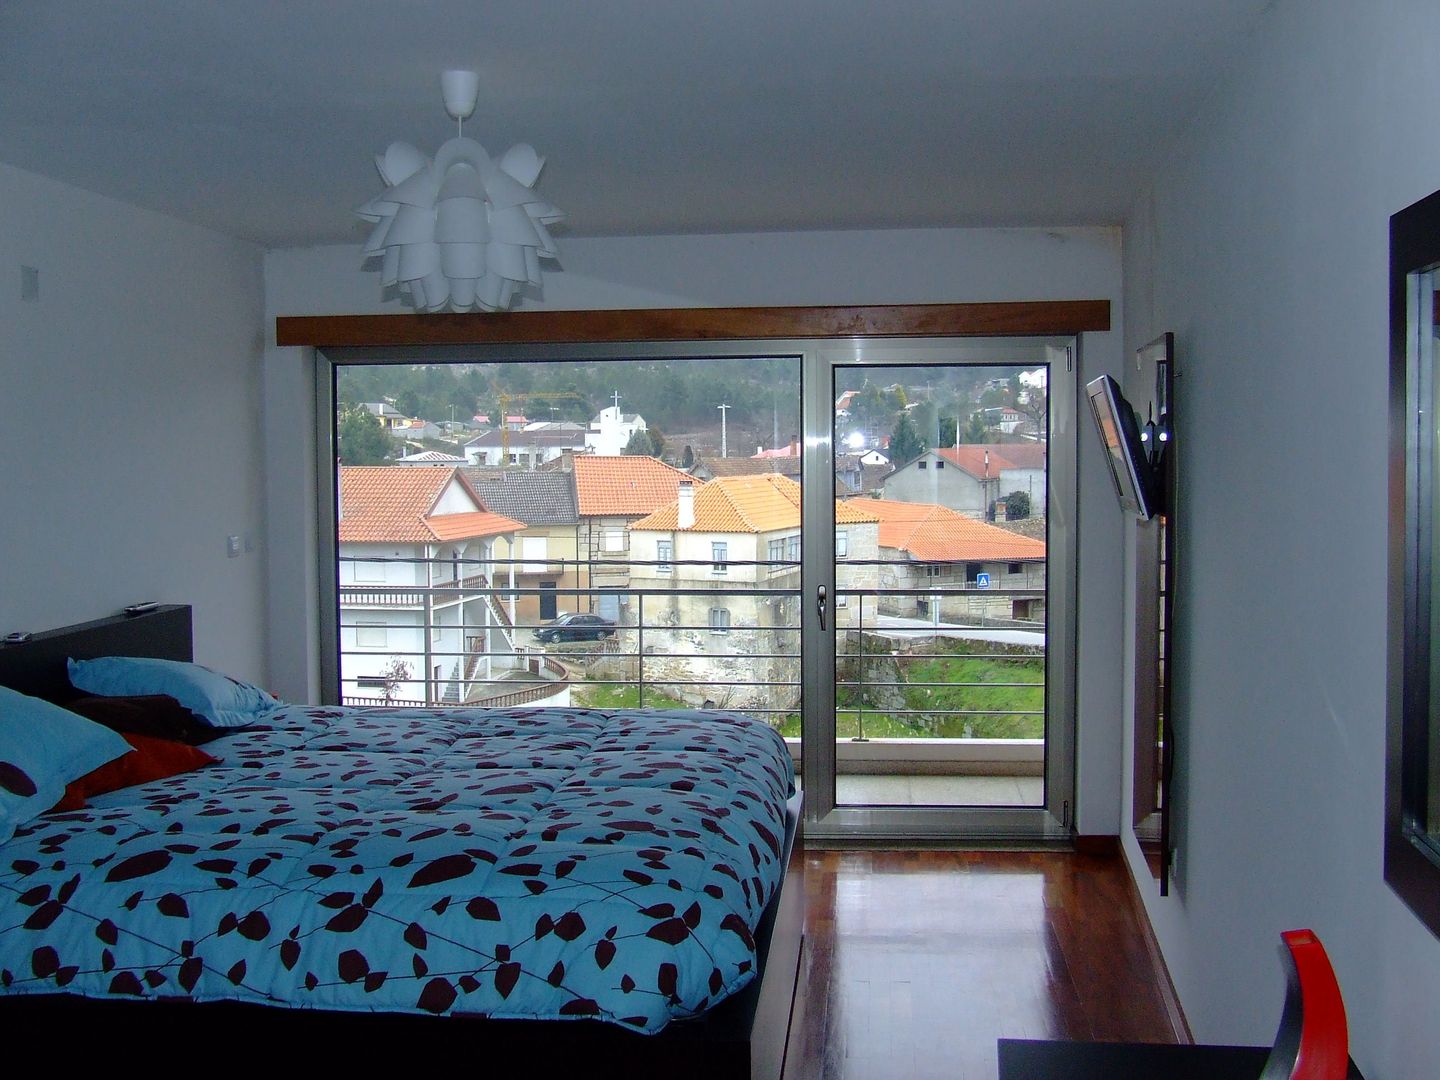 Reabilitação em Ponte do Abade, Vasco Rodrigues, arquitecto Vasco Rodrigues, arquitecto Modern style bedroom